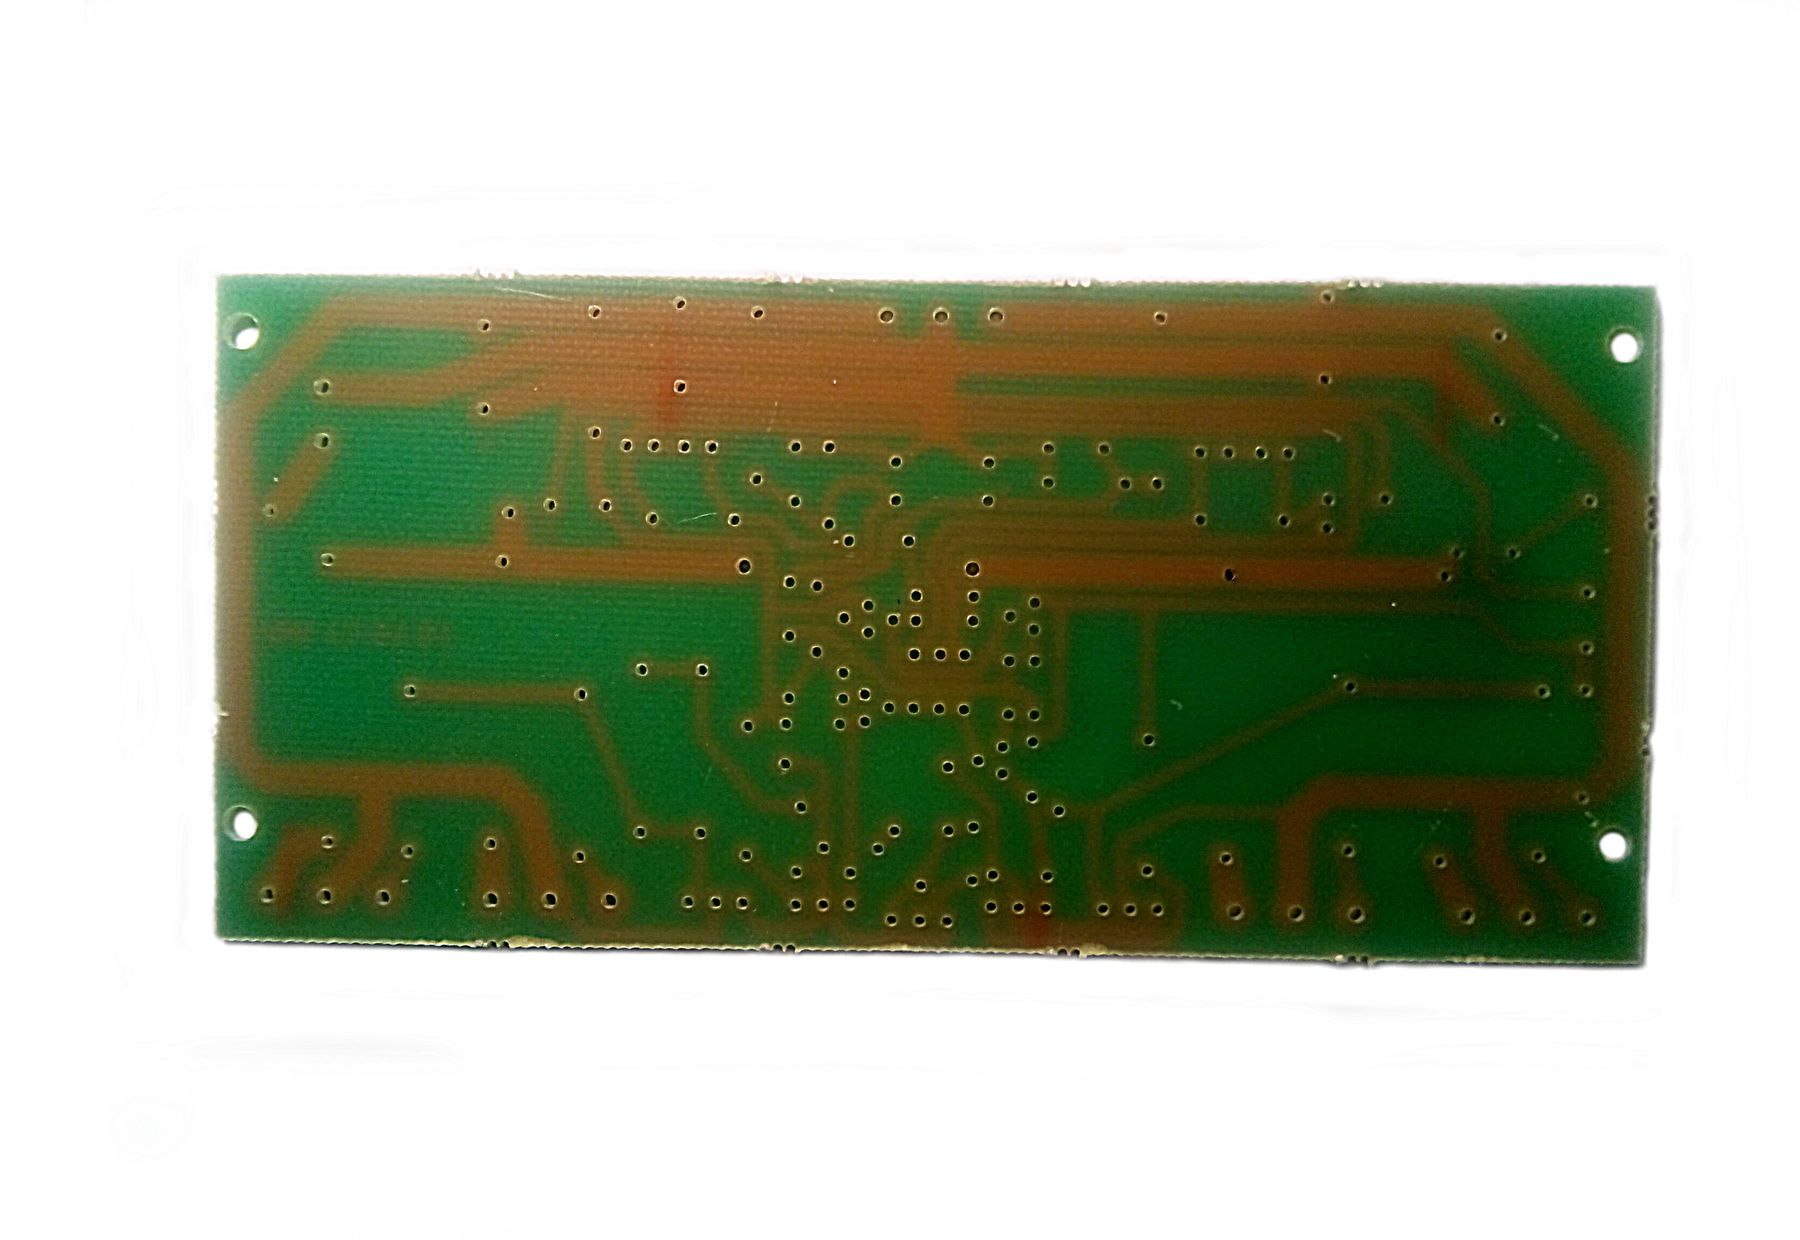 Усилитель НЧ 200 Вт высокоэффективный на пяти транзисторах